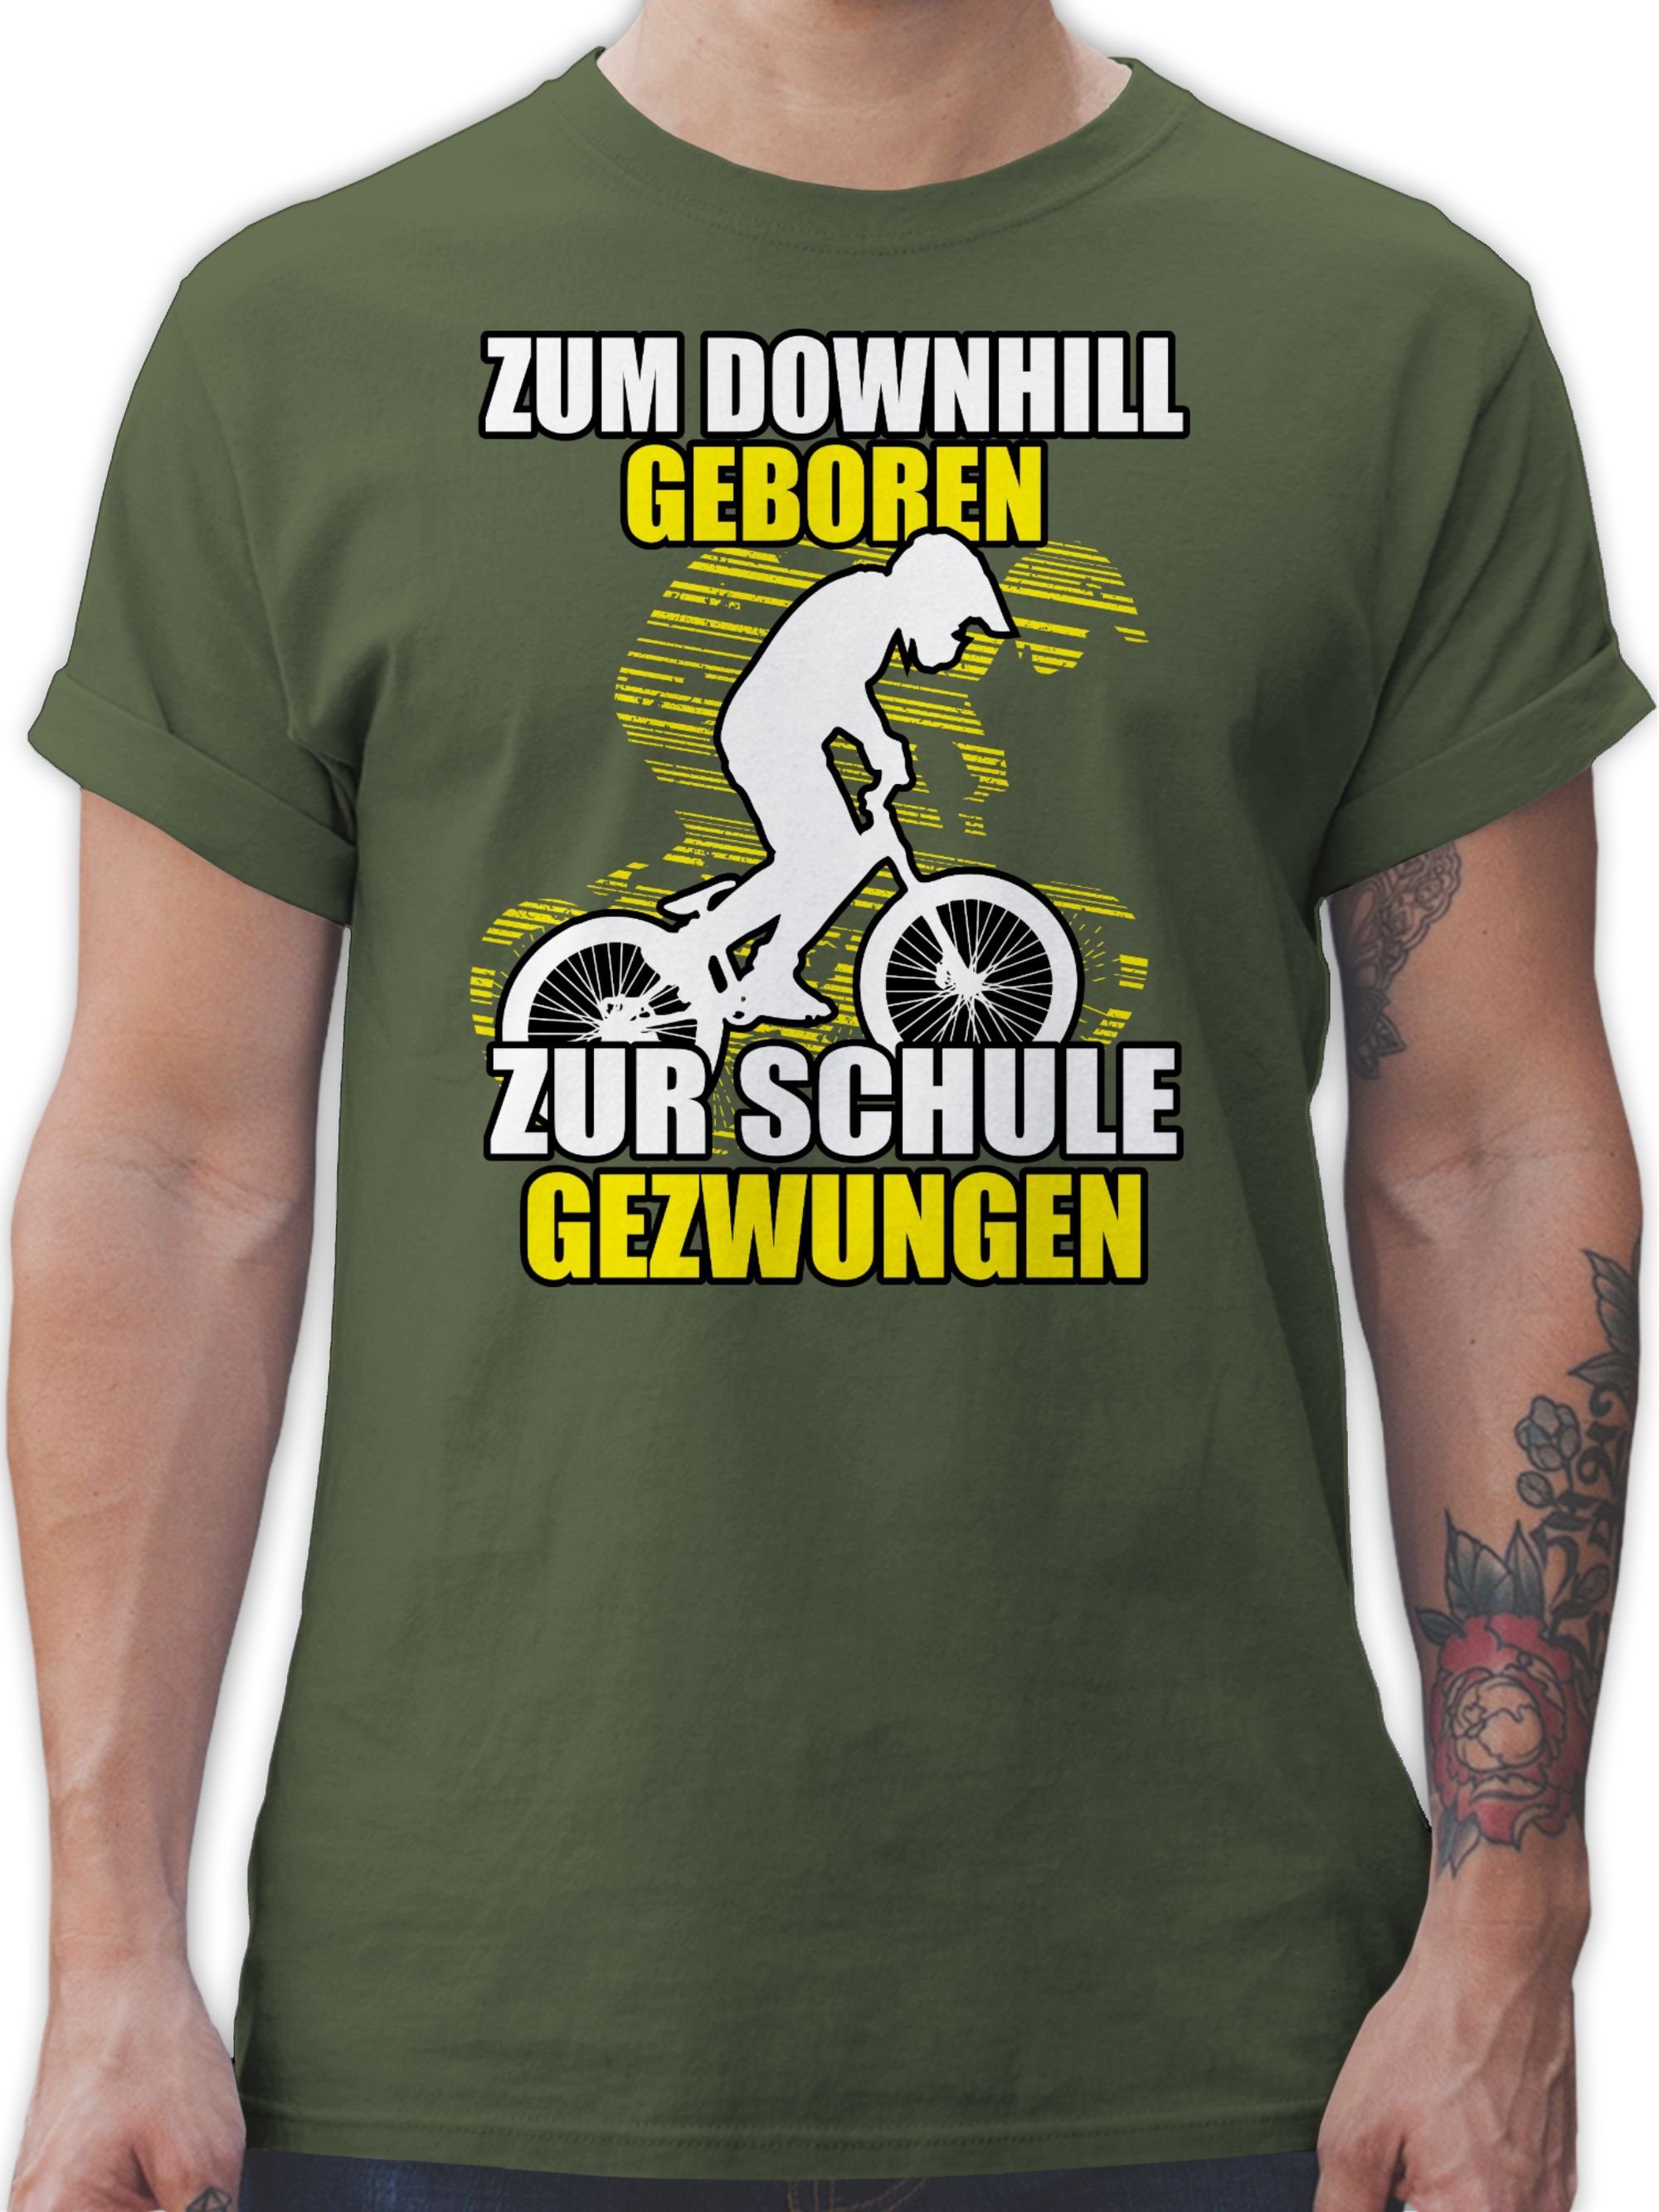 Zum Army Downhill zur geboren Shirtracer Radsport Bekleidung Fahrrad T-Shirt Schule 03 gezwungen Grün